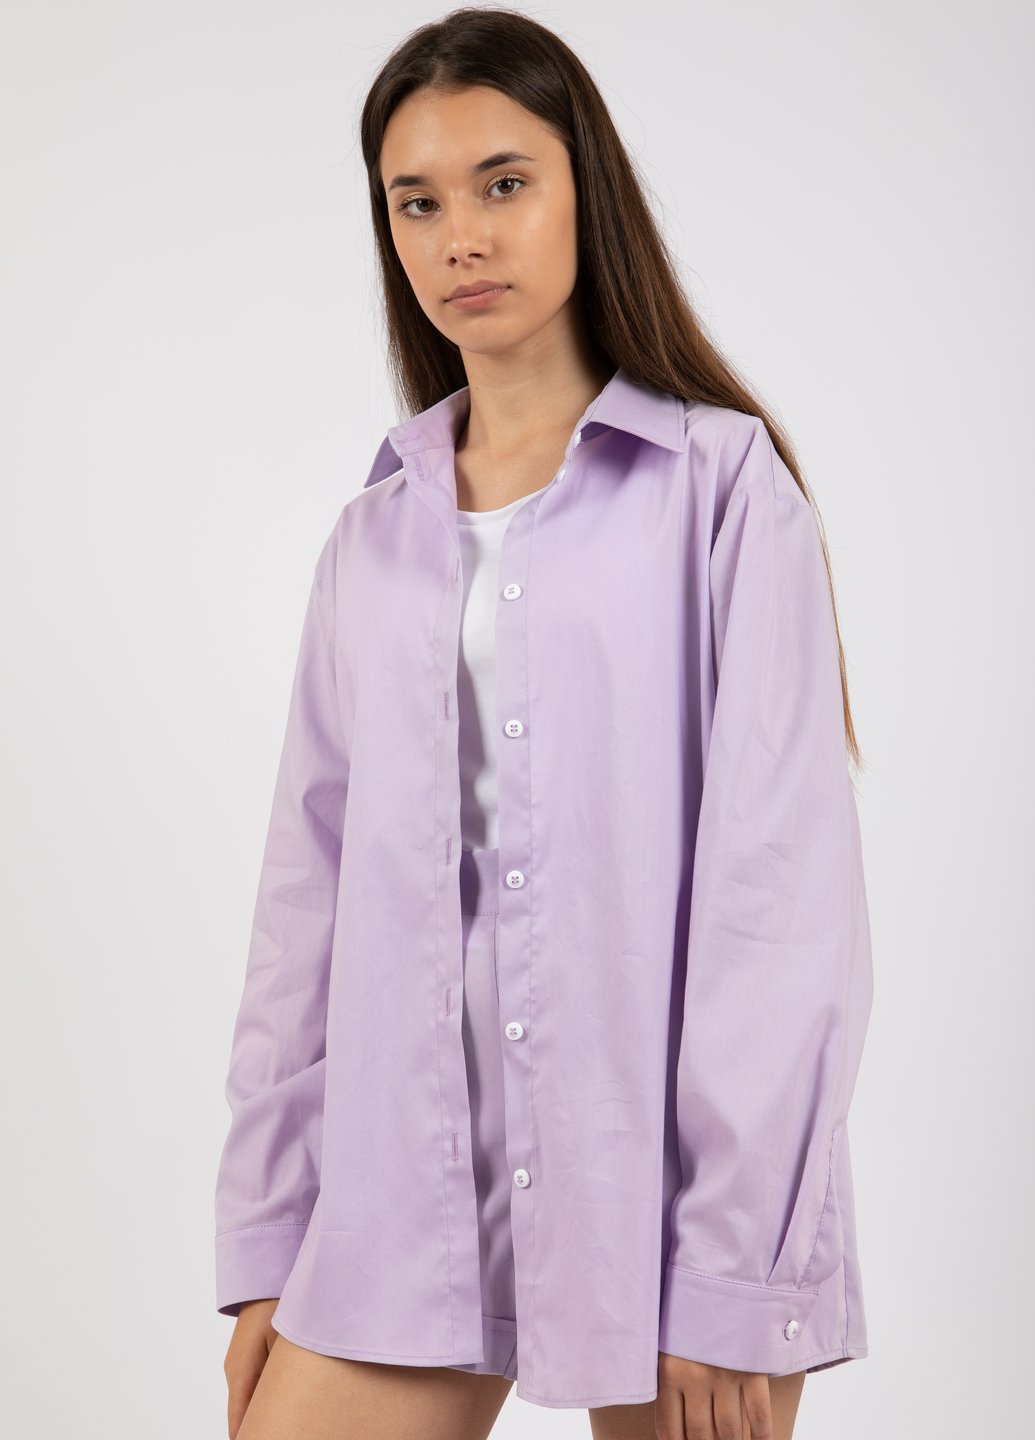 Купить Классическая хлопковая рубашка женская Merlini Вена 200000031 - Сиреневый, 42-44 в интернет-магазине